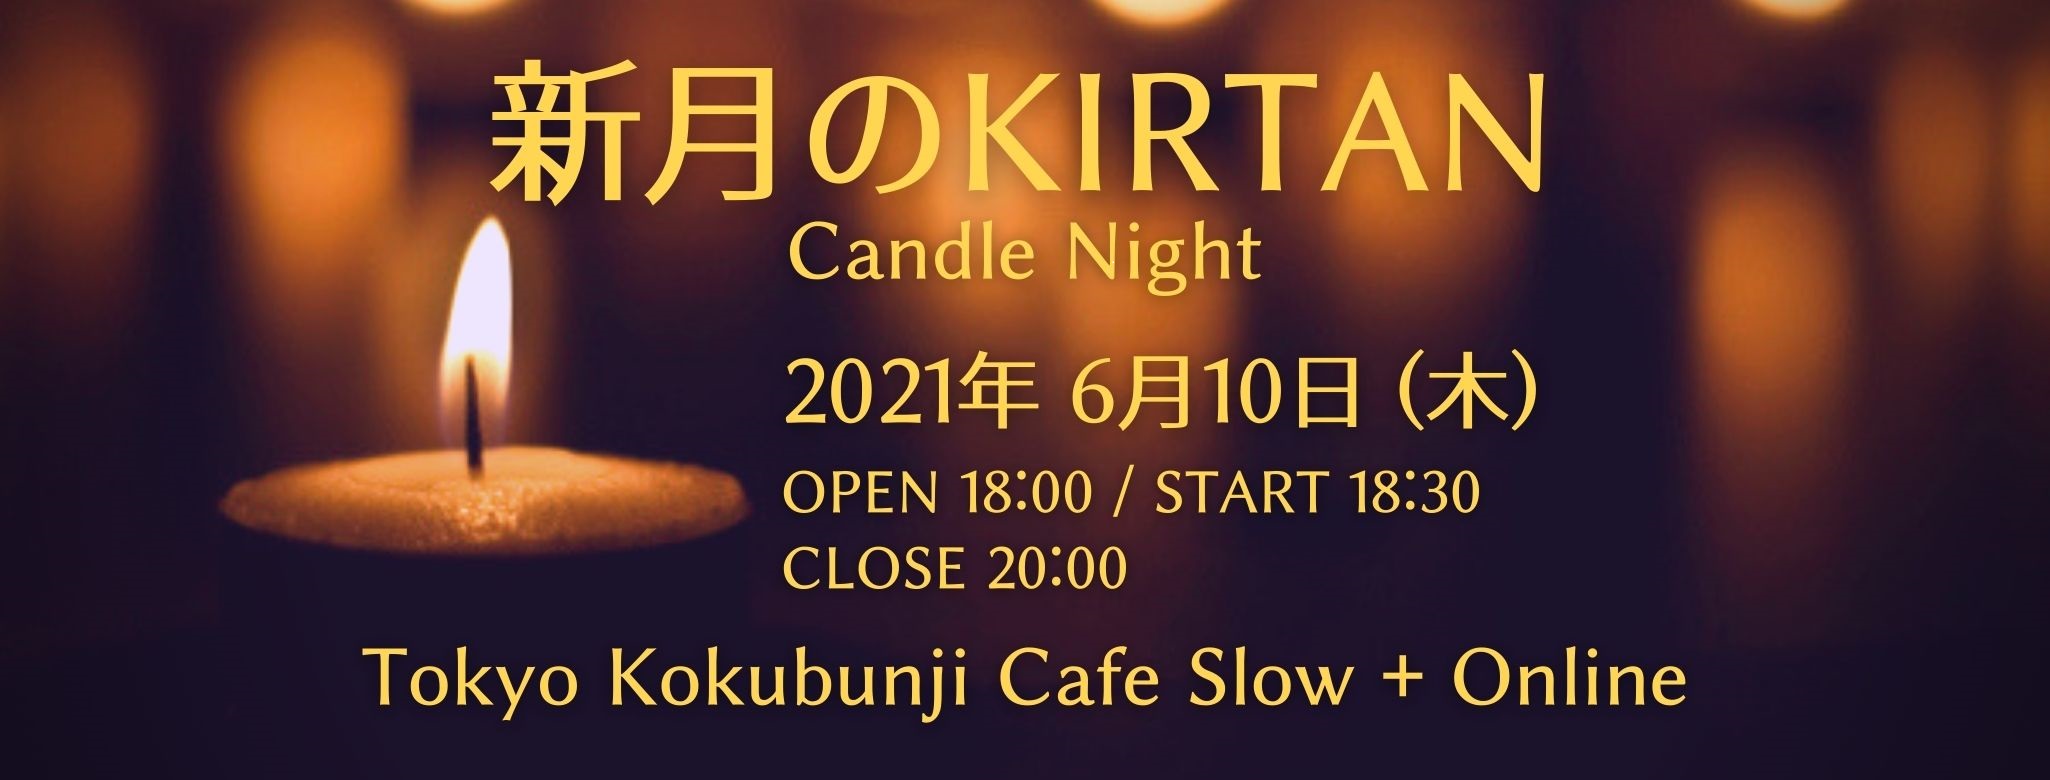 6/10(木) 新月のKIRTAN Candle Night @CafeSlow&Online with 堀田義樹